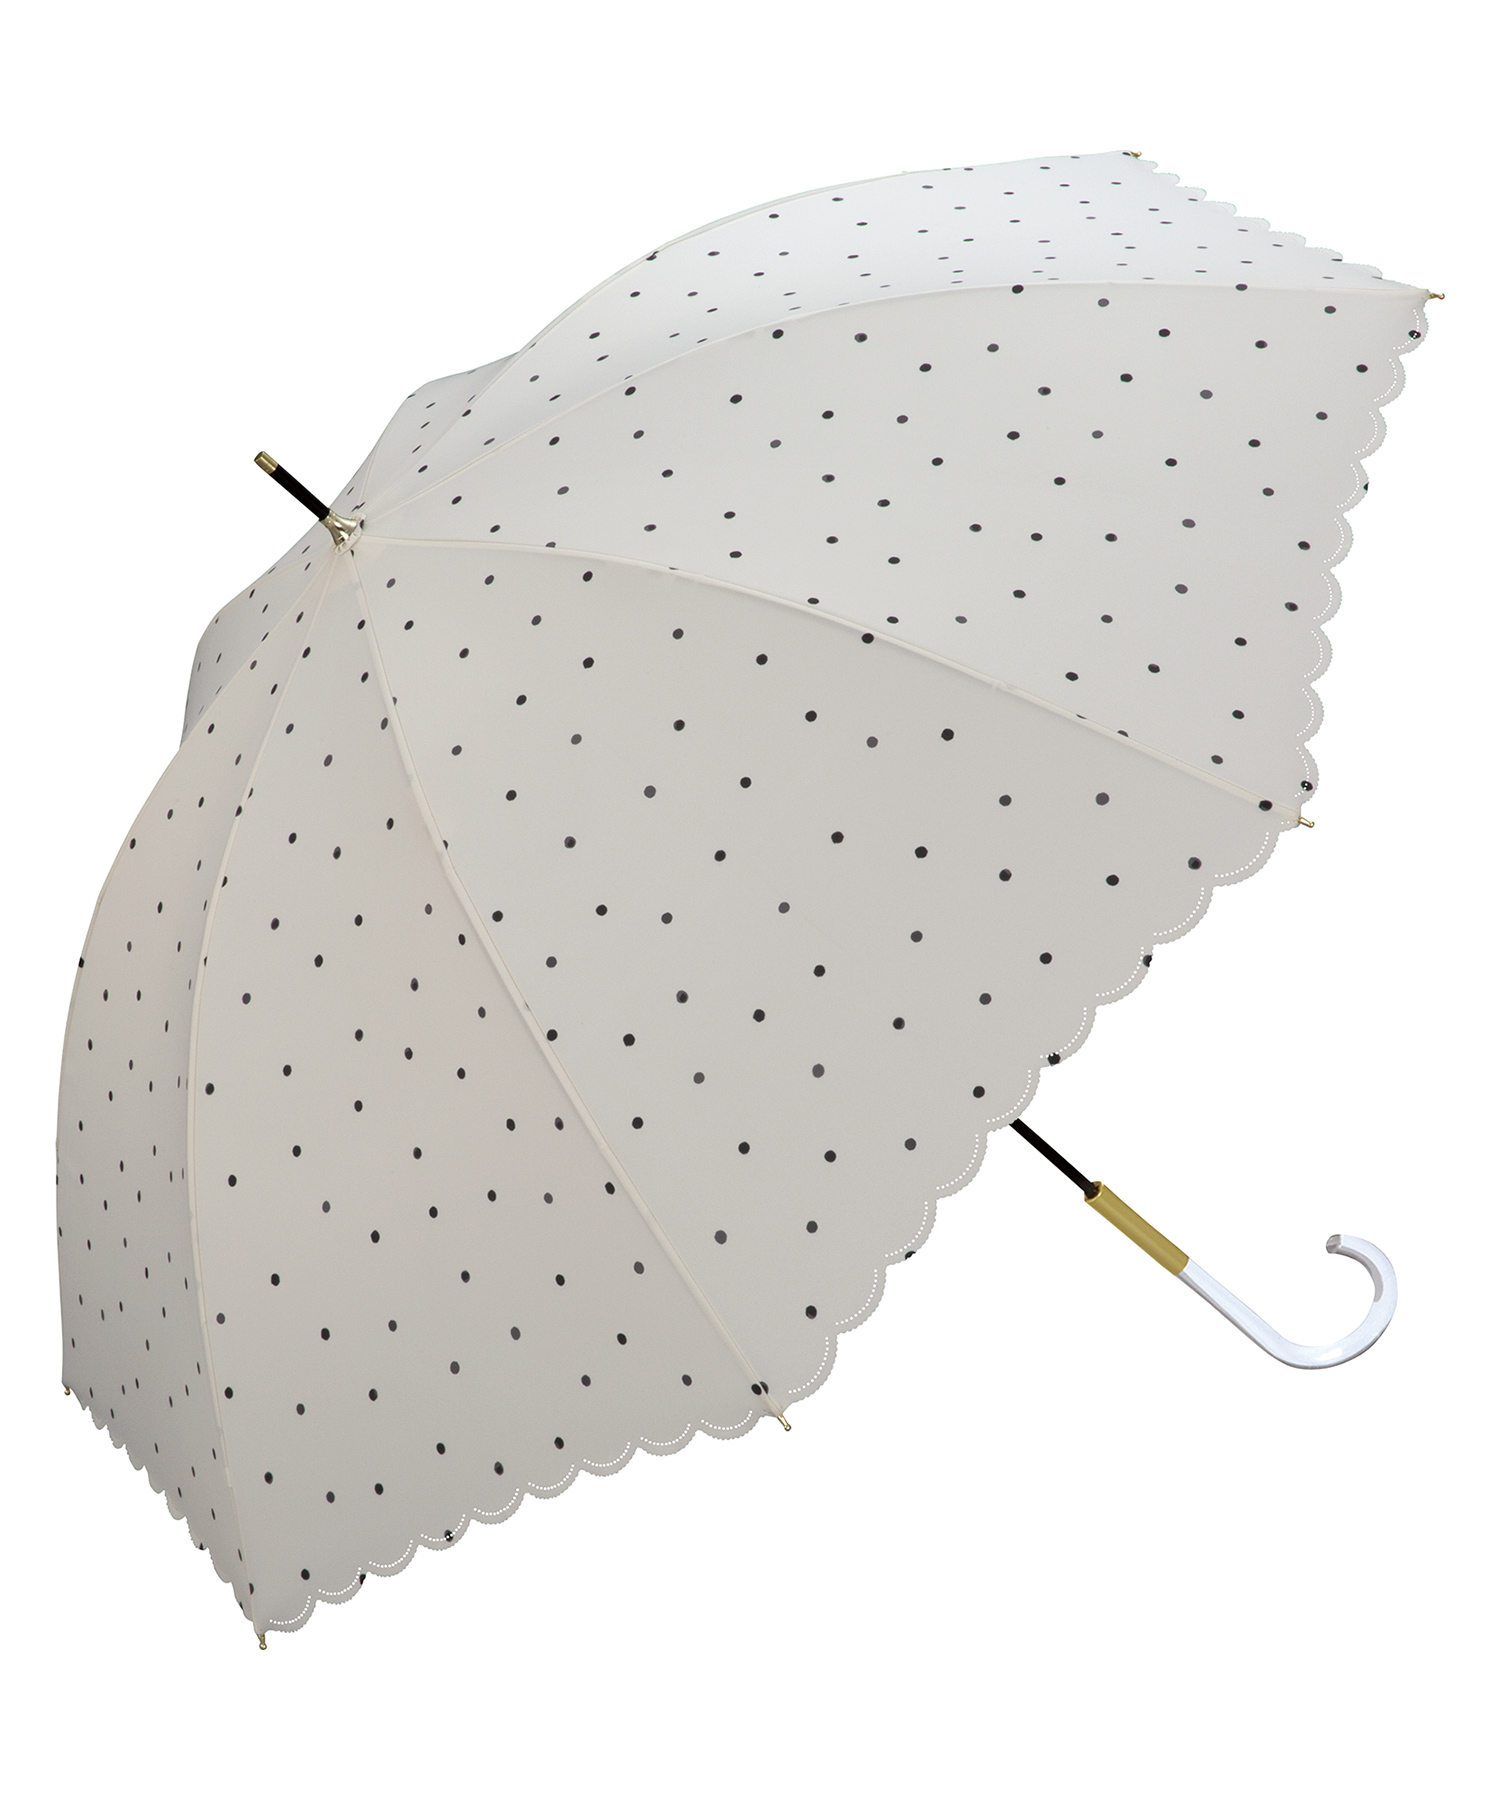 【色: ピンク】202Wpc. 雨傘 ミルキードット ピンク 58cm 晴雨兼用